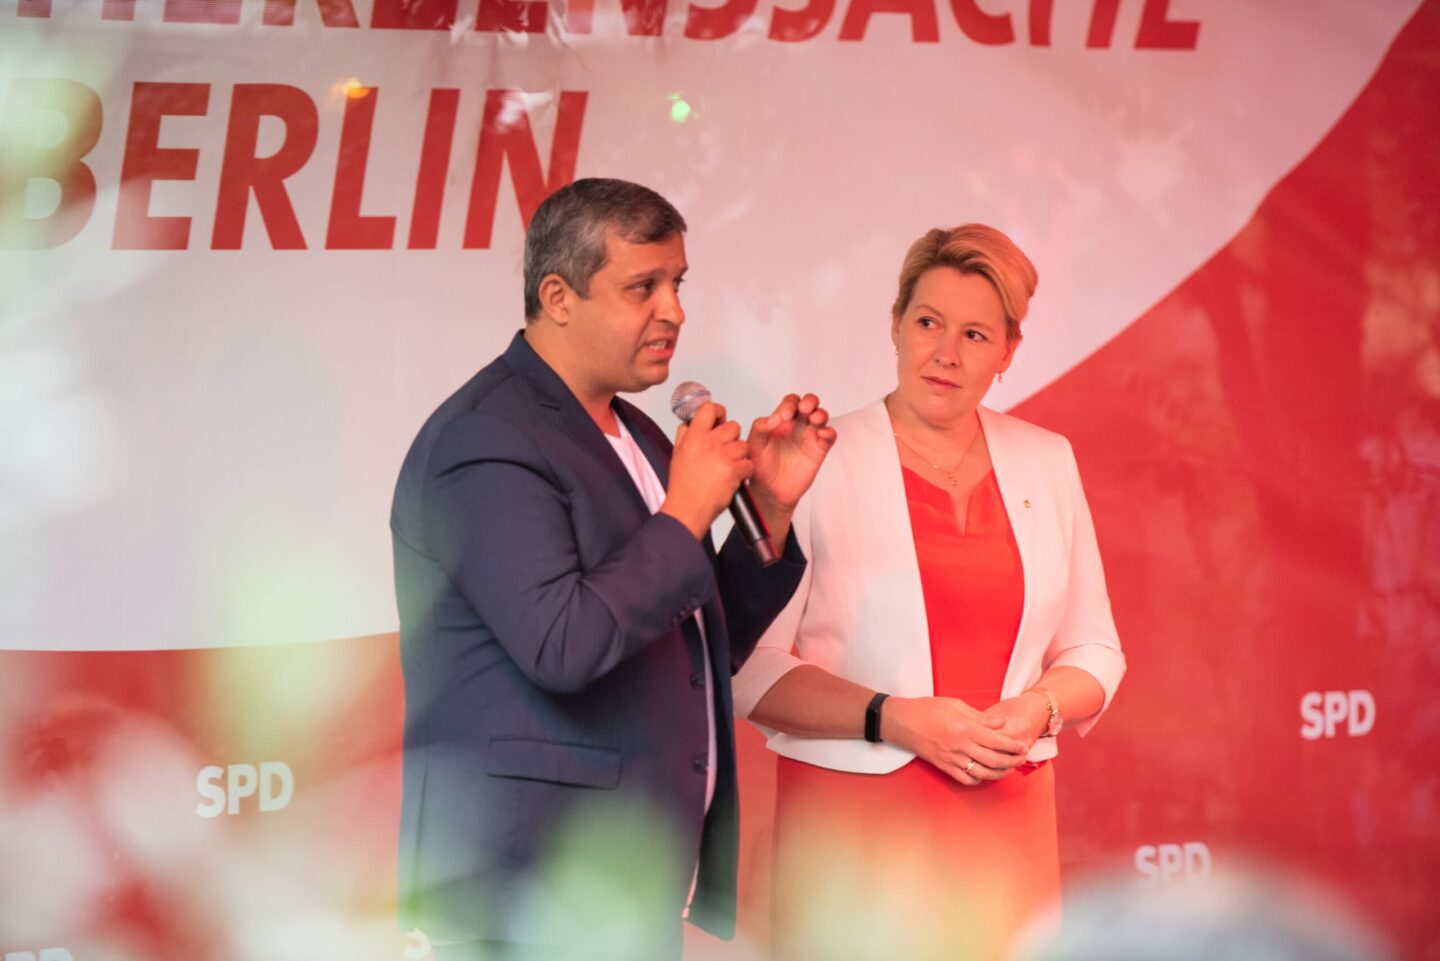 Sommerfest der Berliner SPD: „Endlich sehen wir uns wieder" 25